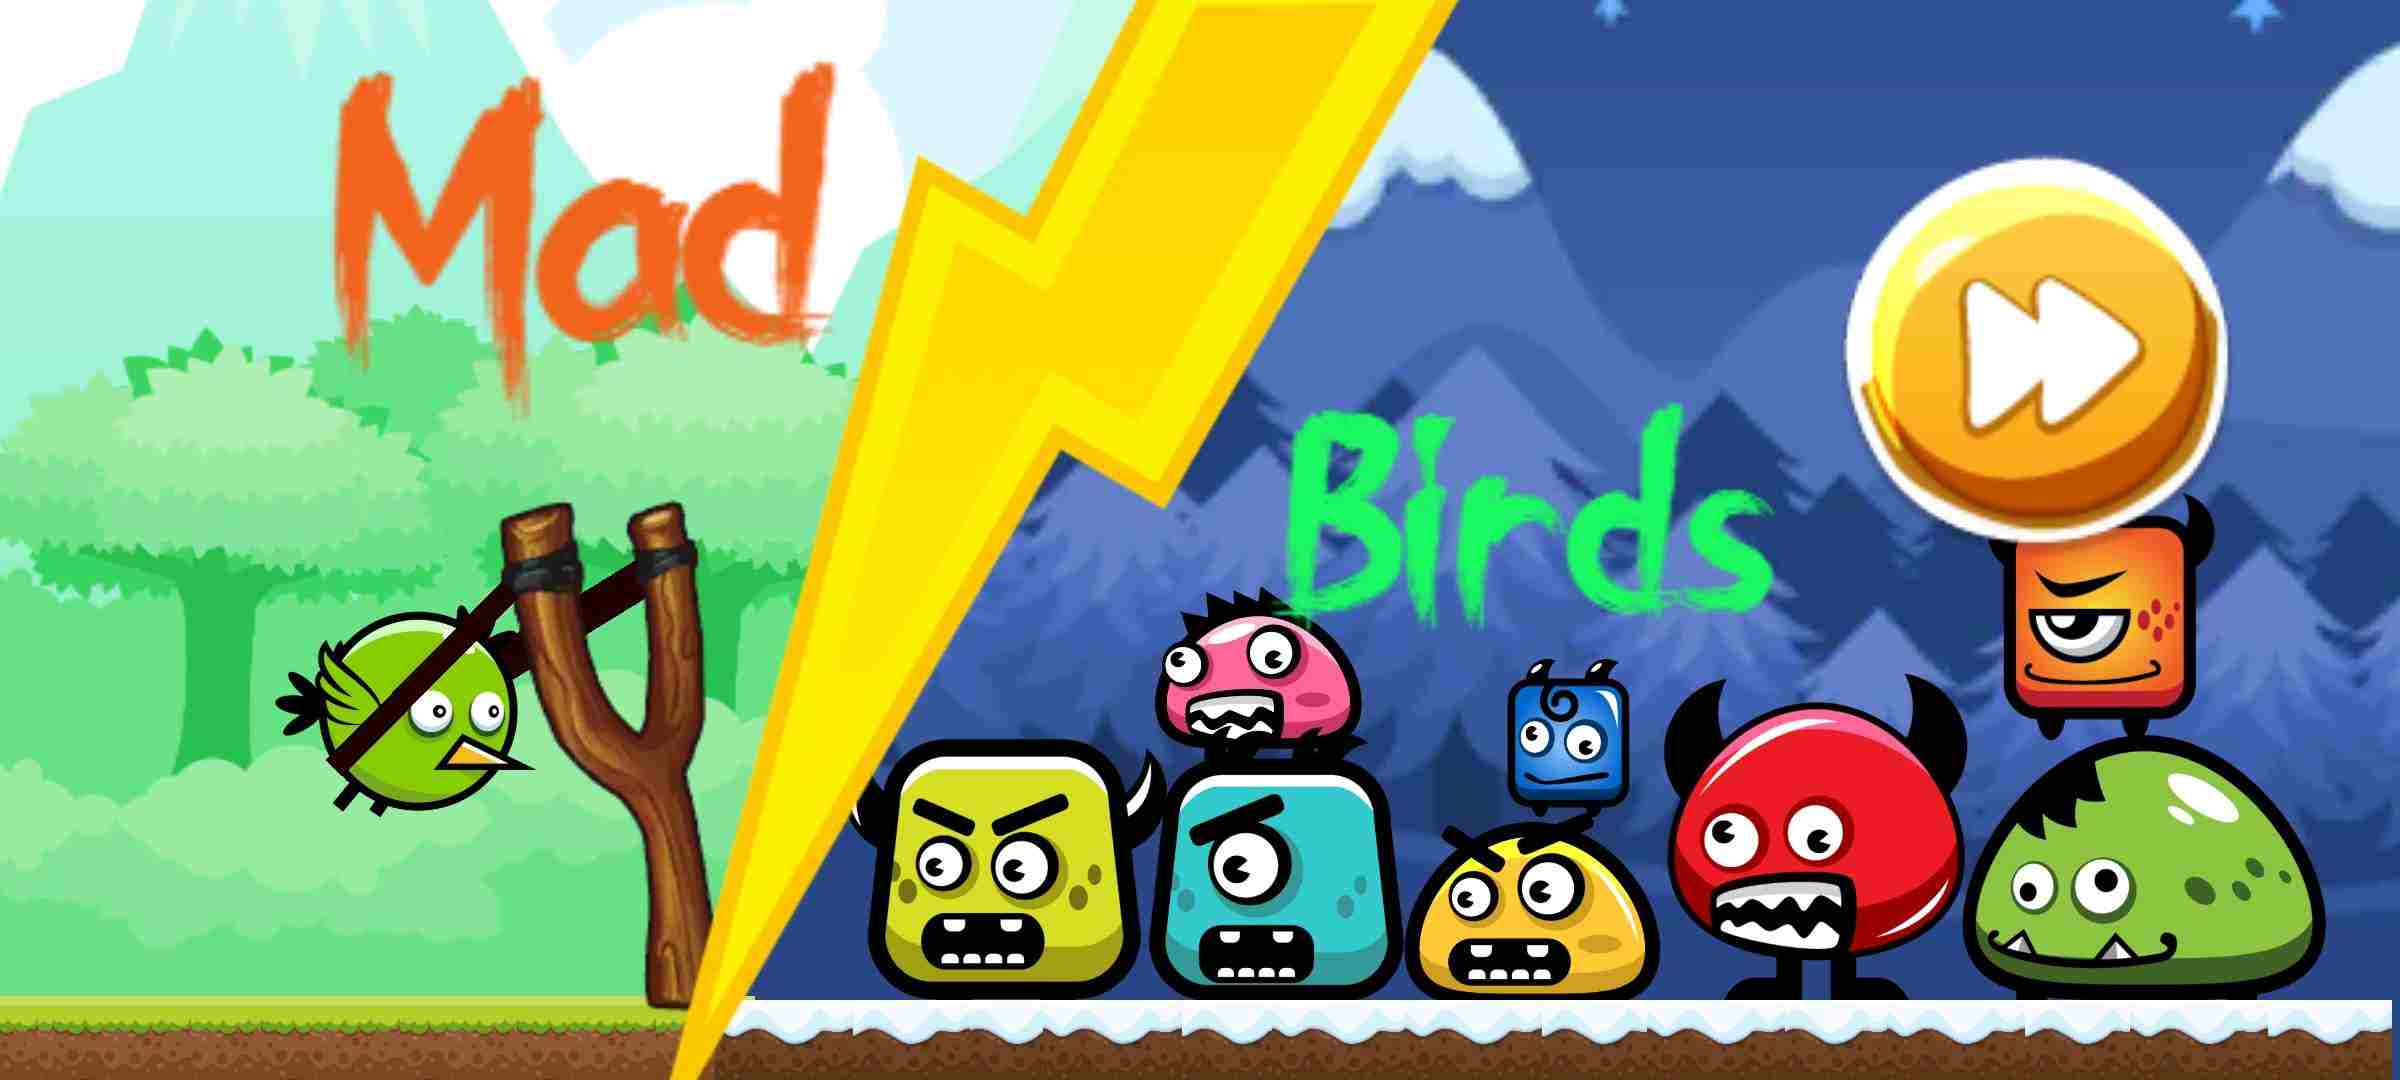 疯狂的小鸟电脑版下载教程 疯狂的小鸟最新PC版免费安装